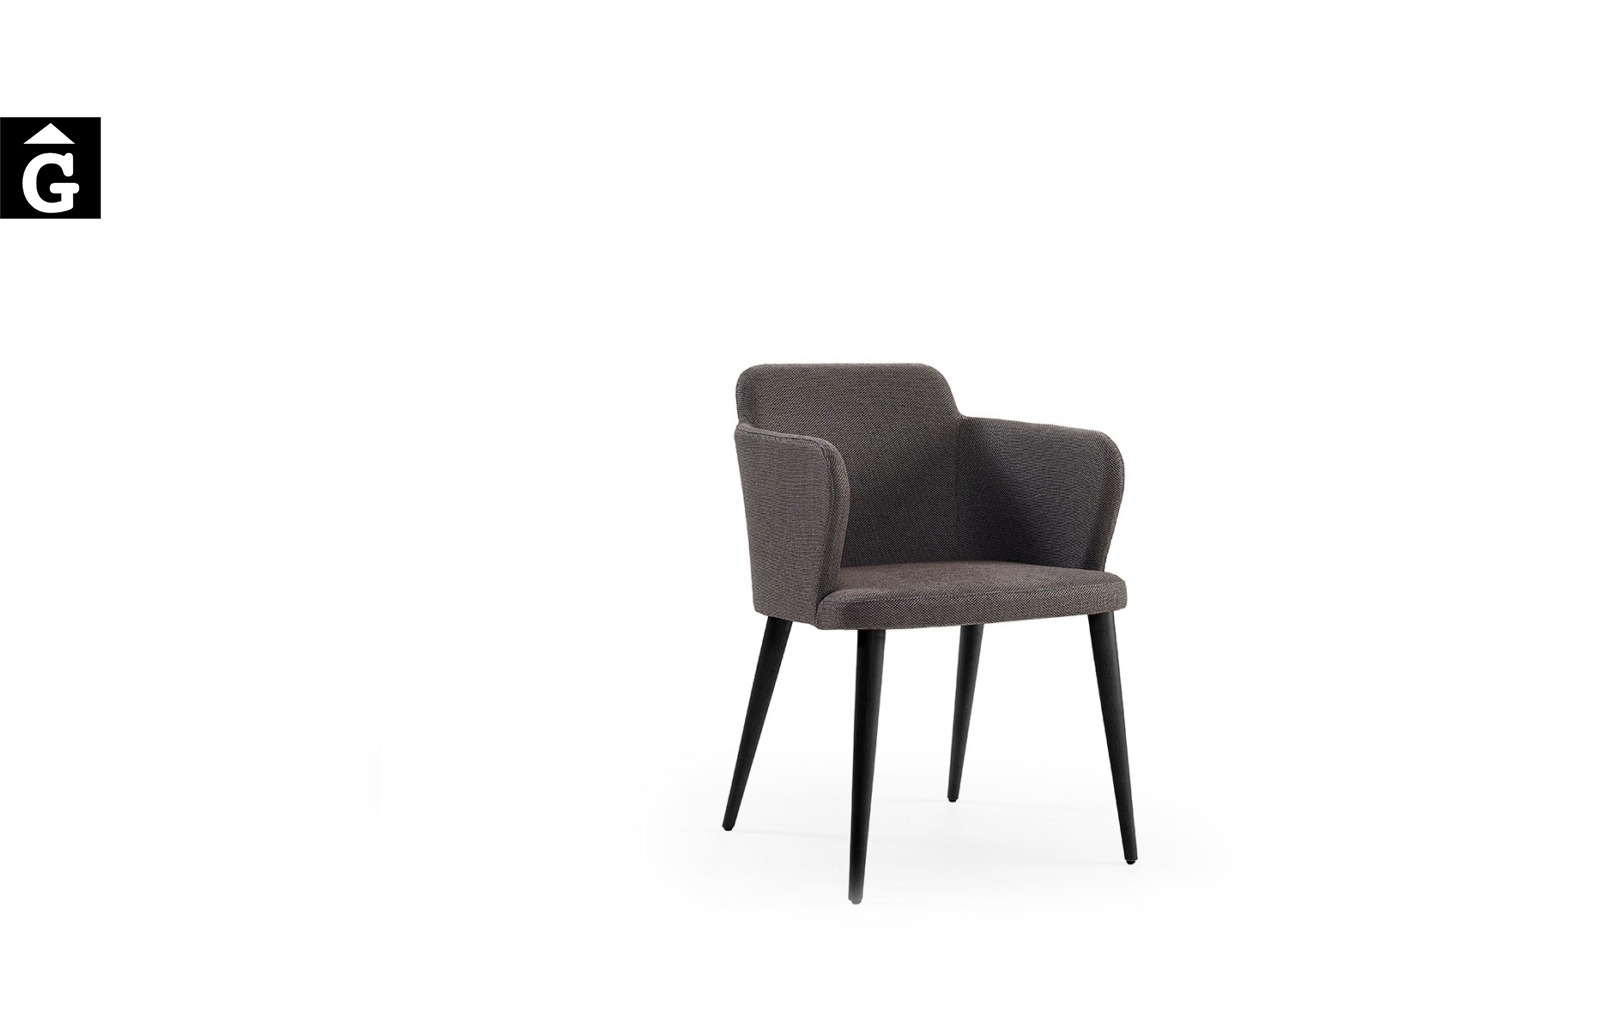 Cadira Evita MR fosca Doos by mobles Gifreu taules i cadires alta qualitat